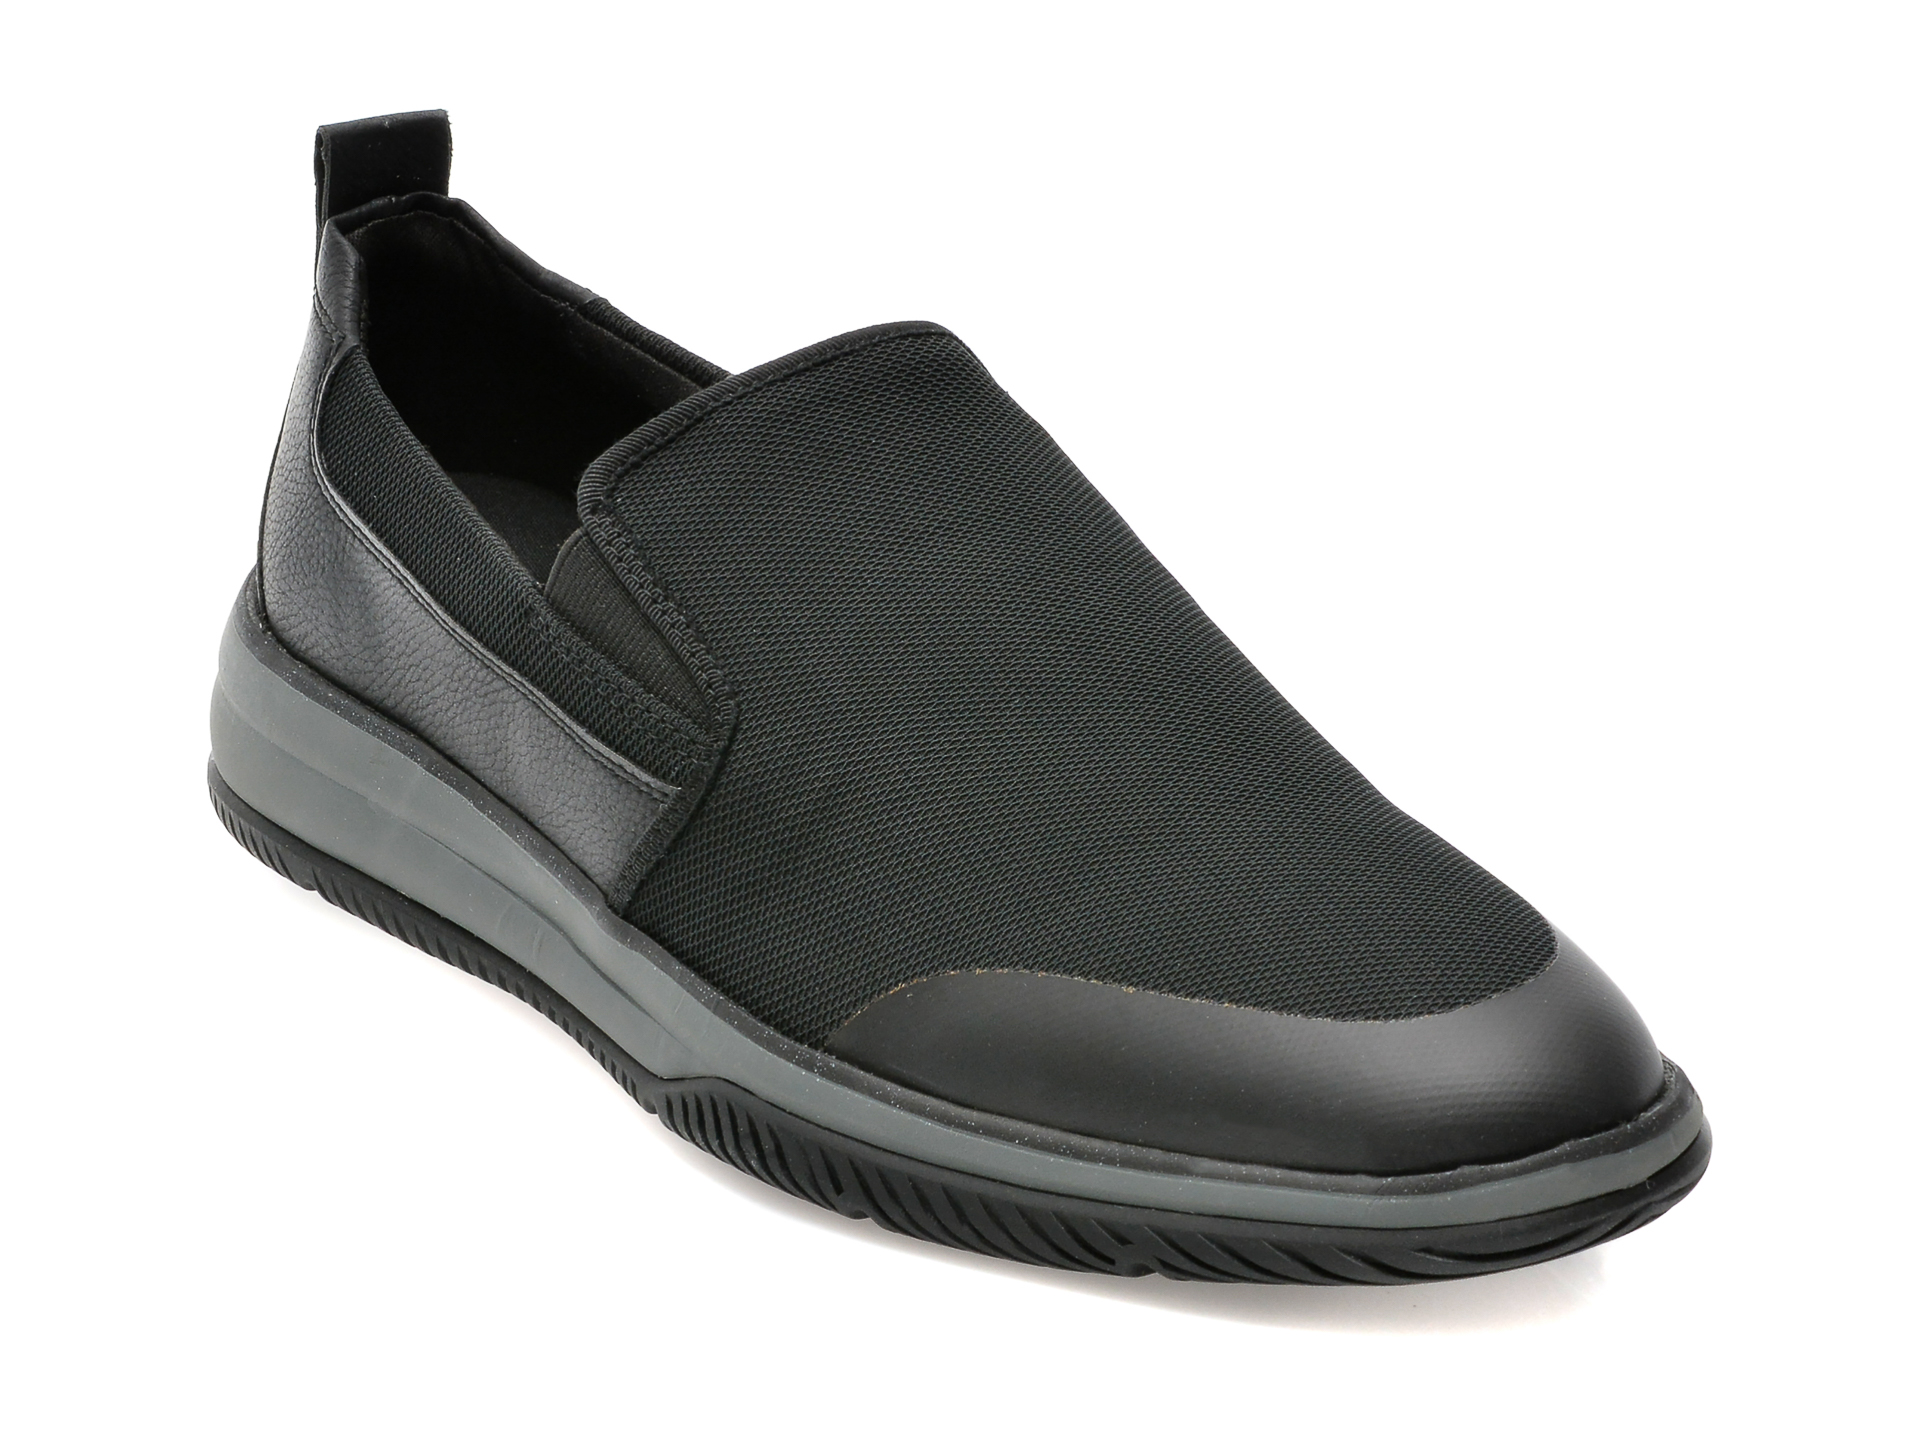 Pantofi ALDO negri, BURLEY001, din material textil /barbati/pantofi